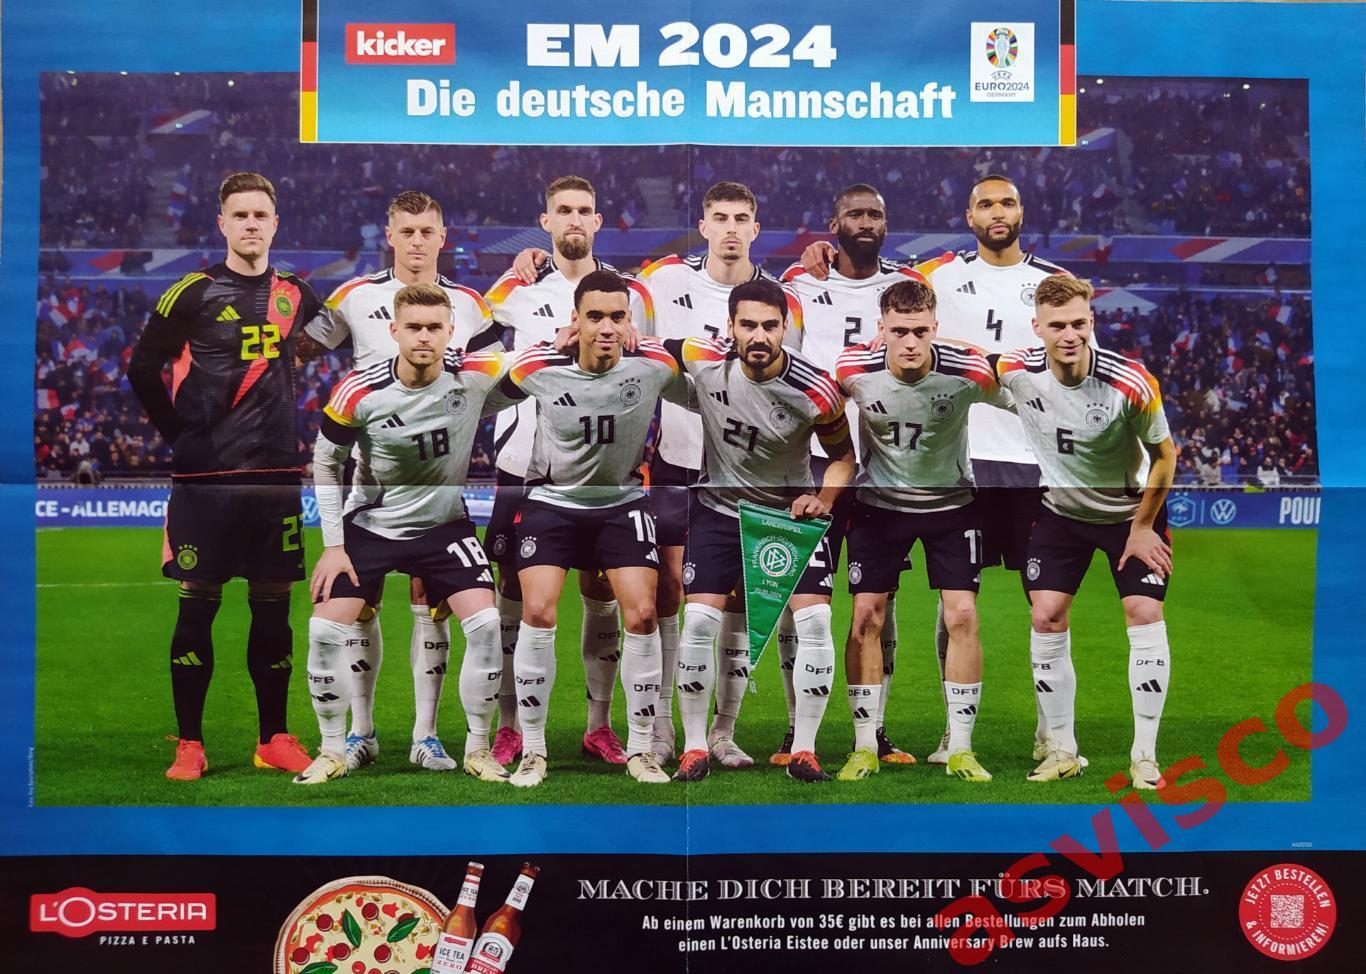 Чемпионат Европы по футболу в Германии 2024 года. Представление команд. 6